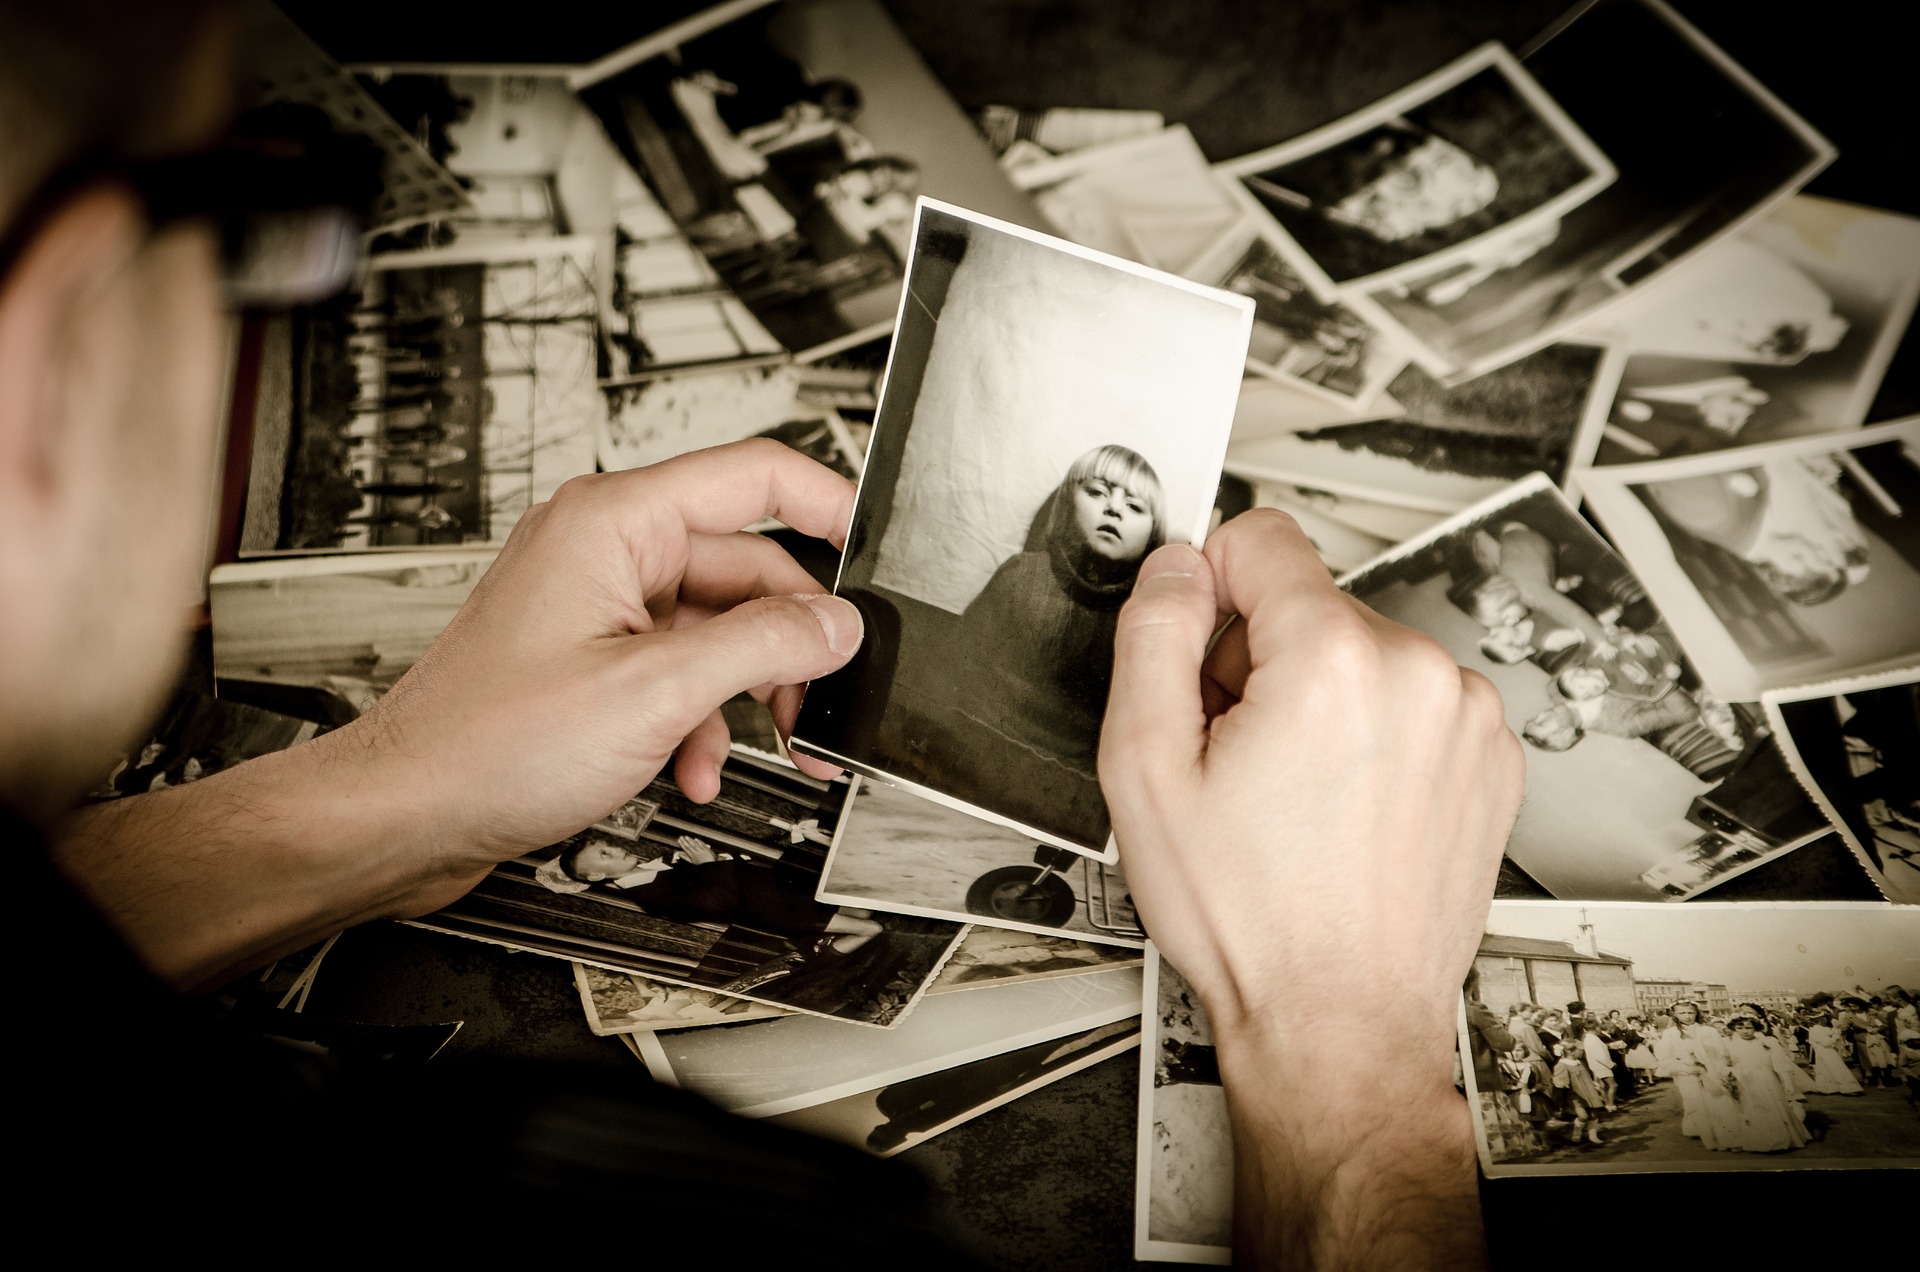 Xem các bức ảnh cũ về những khoảng thời gian tươi đẹp cũng là một cách để tự chăm sóc bản thân. (Ảnh: Pixabay)